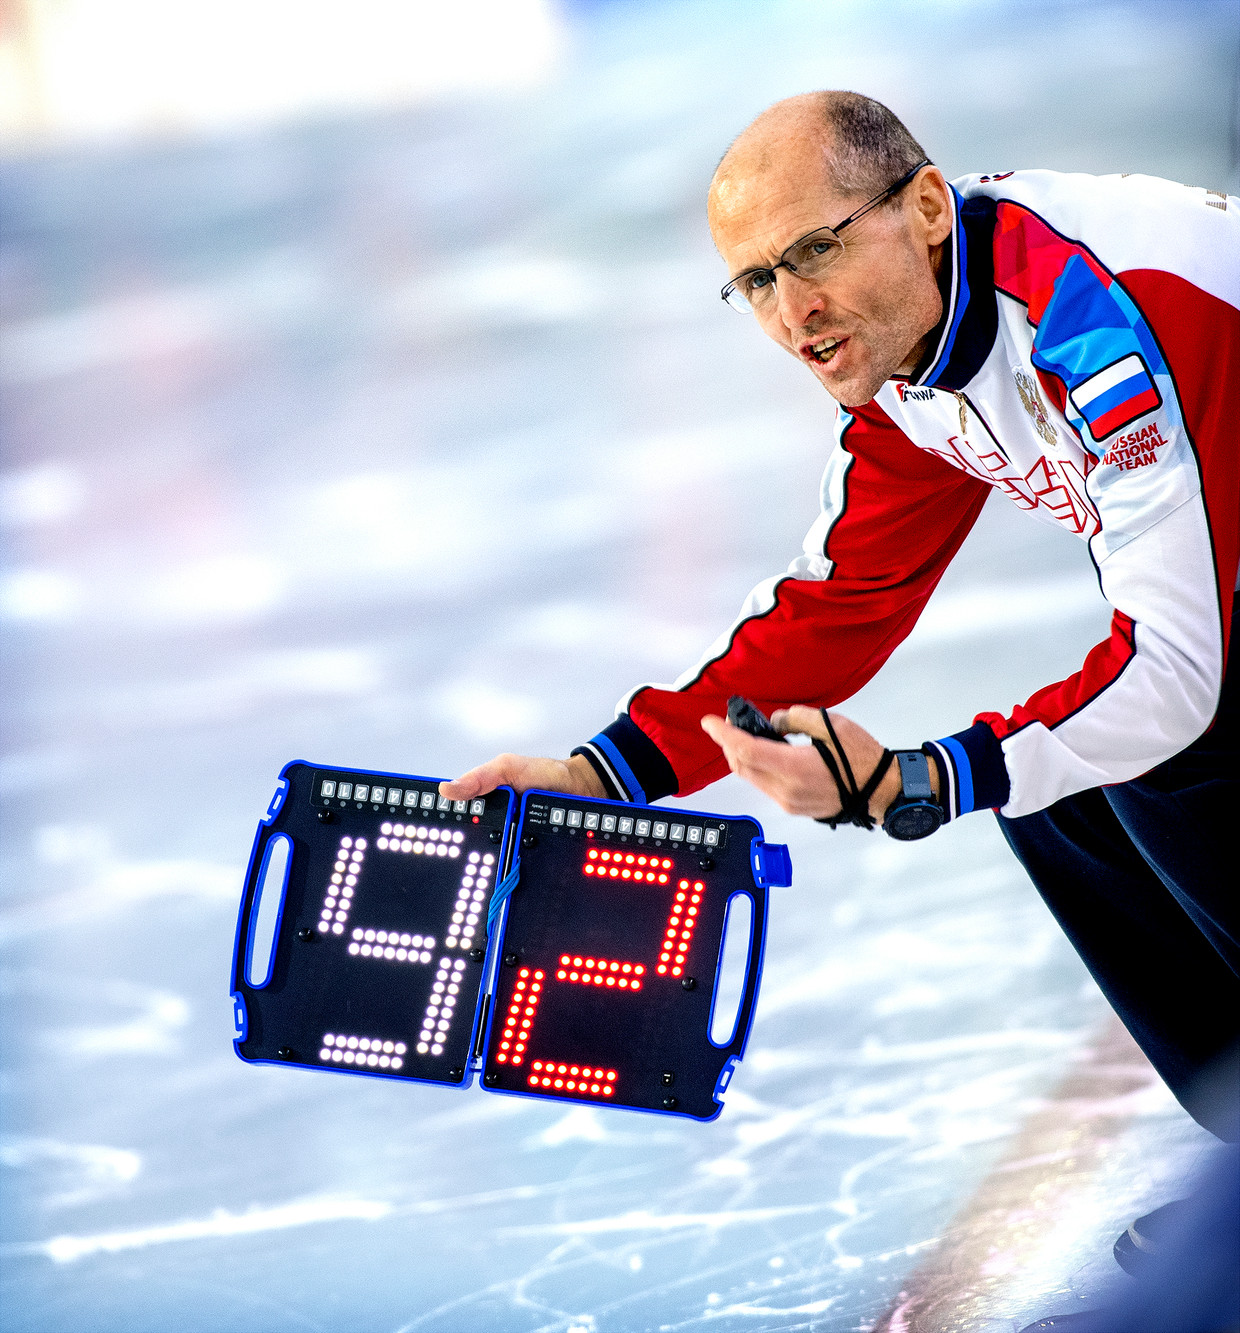 Poltavets berhenti sebagai pelatih nasional tim speed skating Rusia